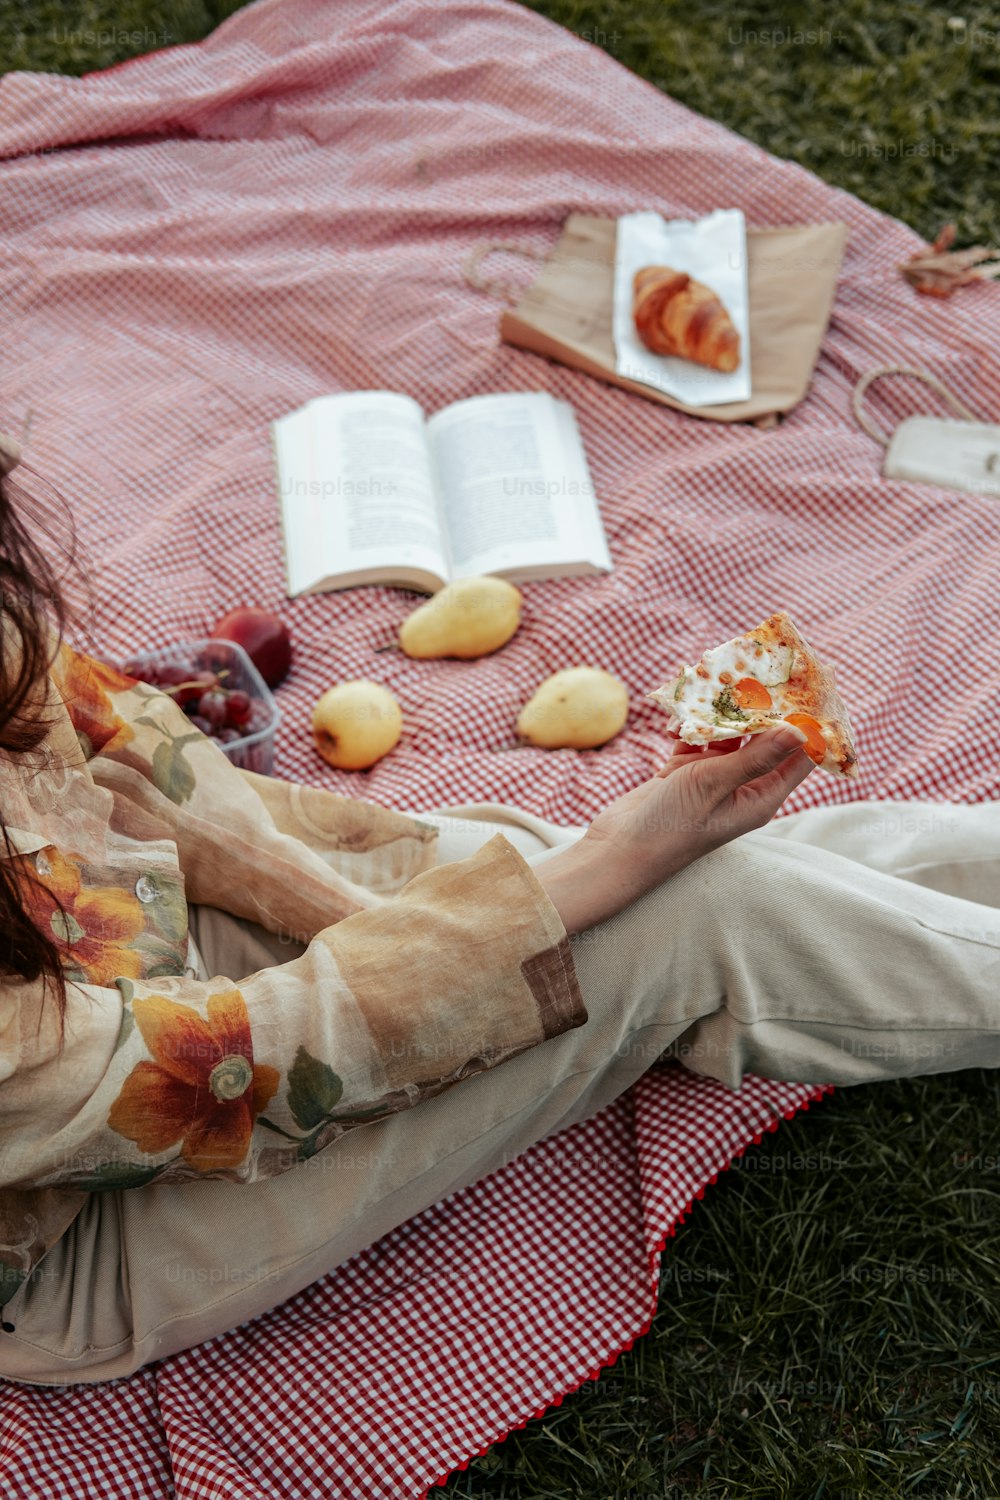 Une femme assise sur une couverture mangeant de la nourriture